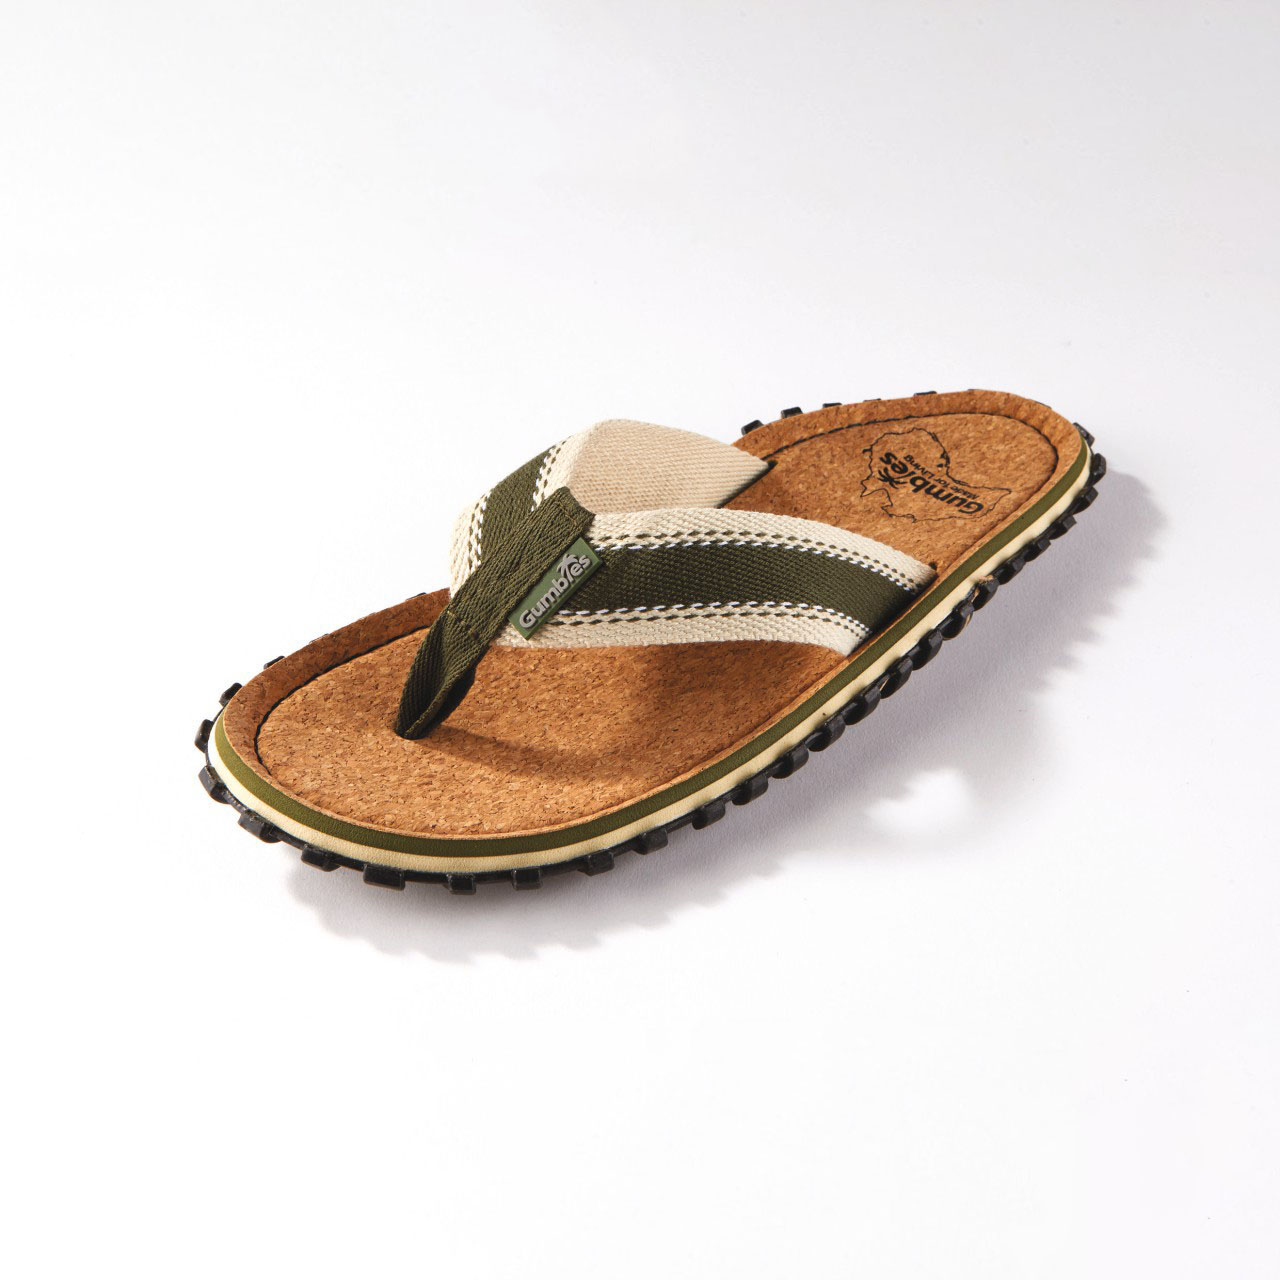 Gumbies Original 1,000-Miler Flip Flop Sandals